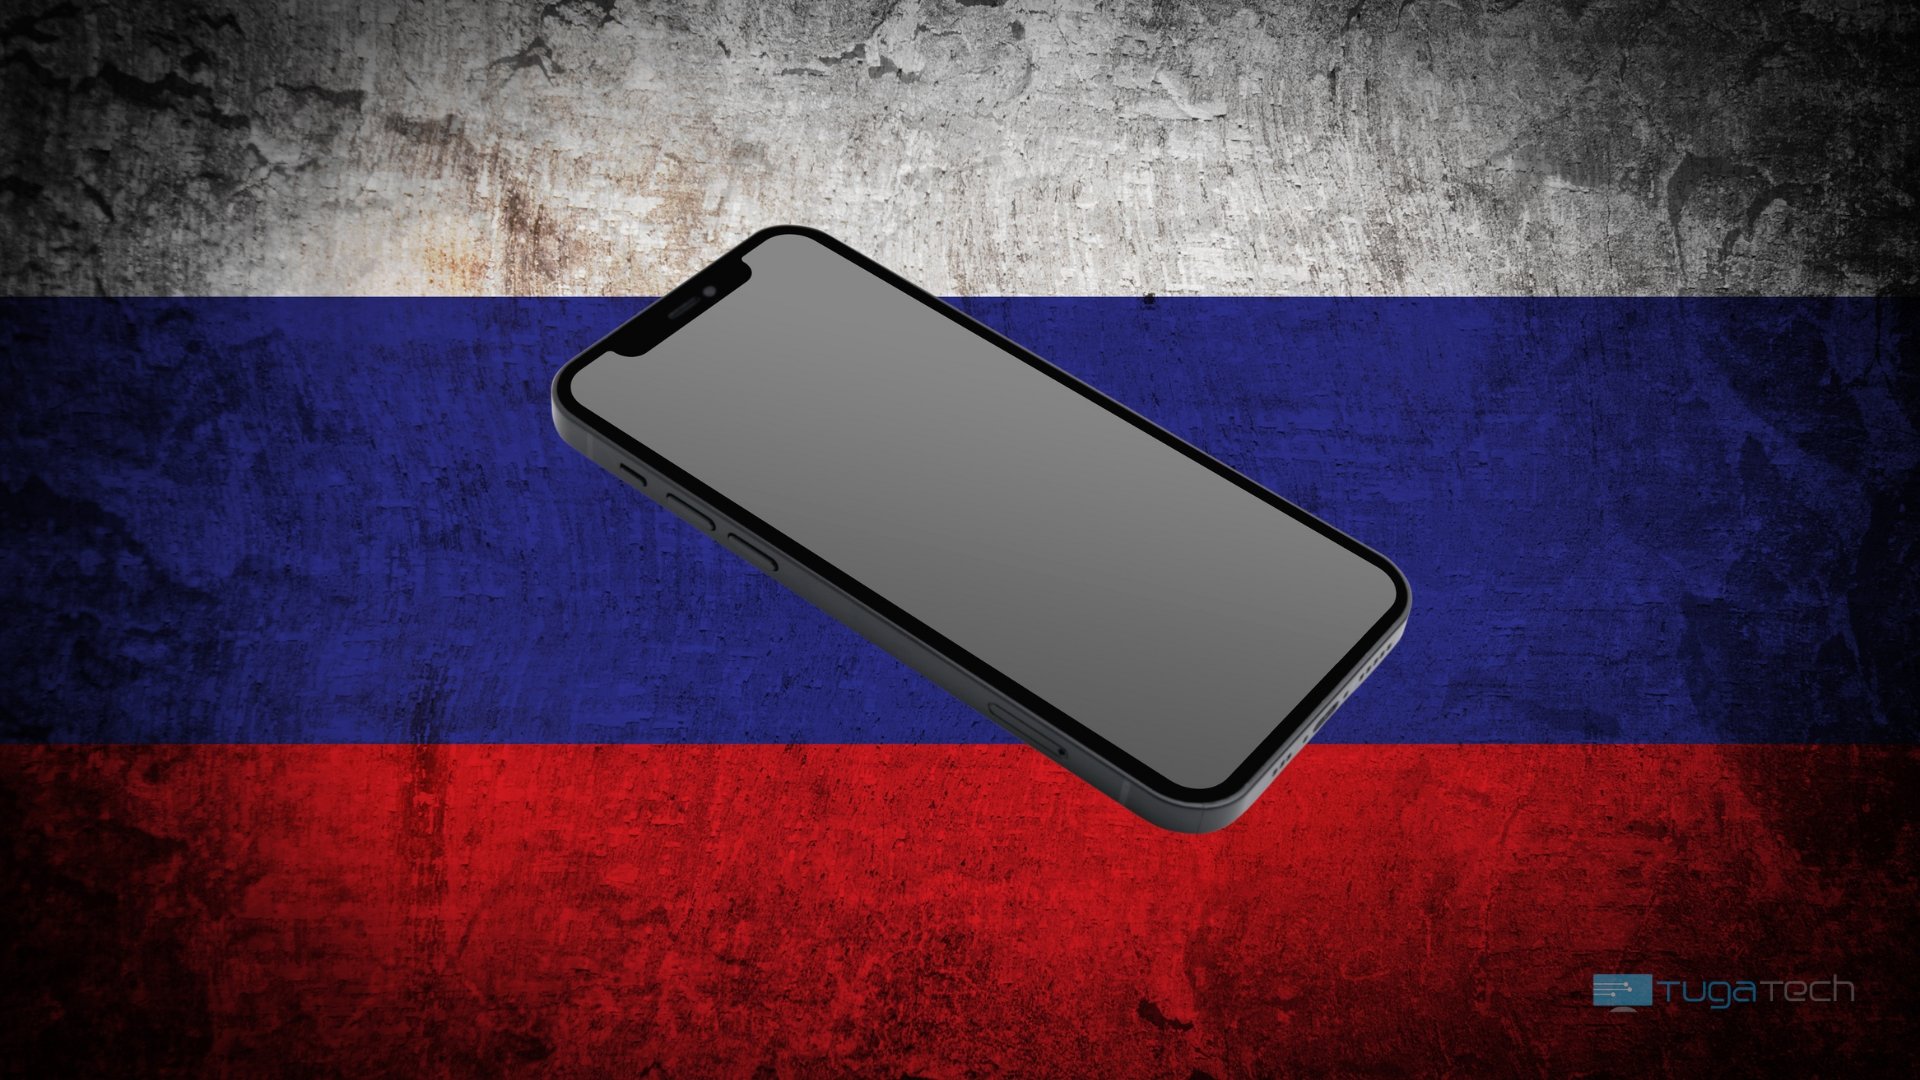 Entidades Russas devem deixar de usar iPhones até inícios de Abril